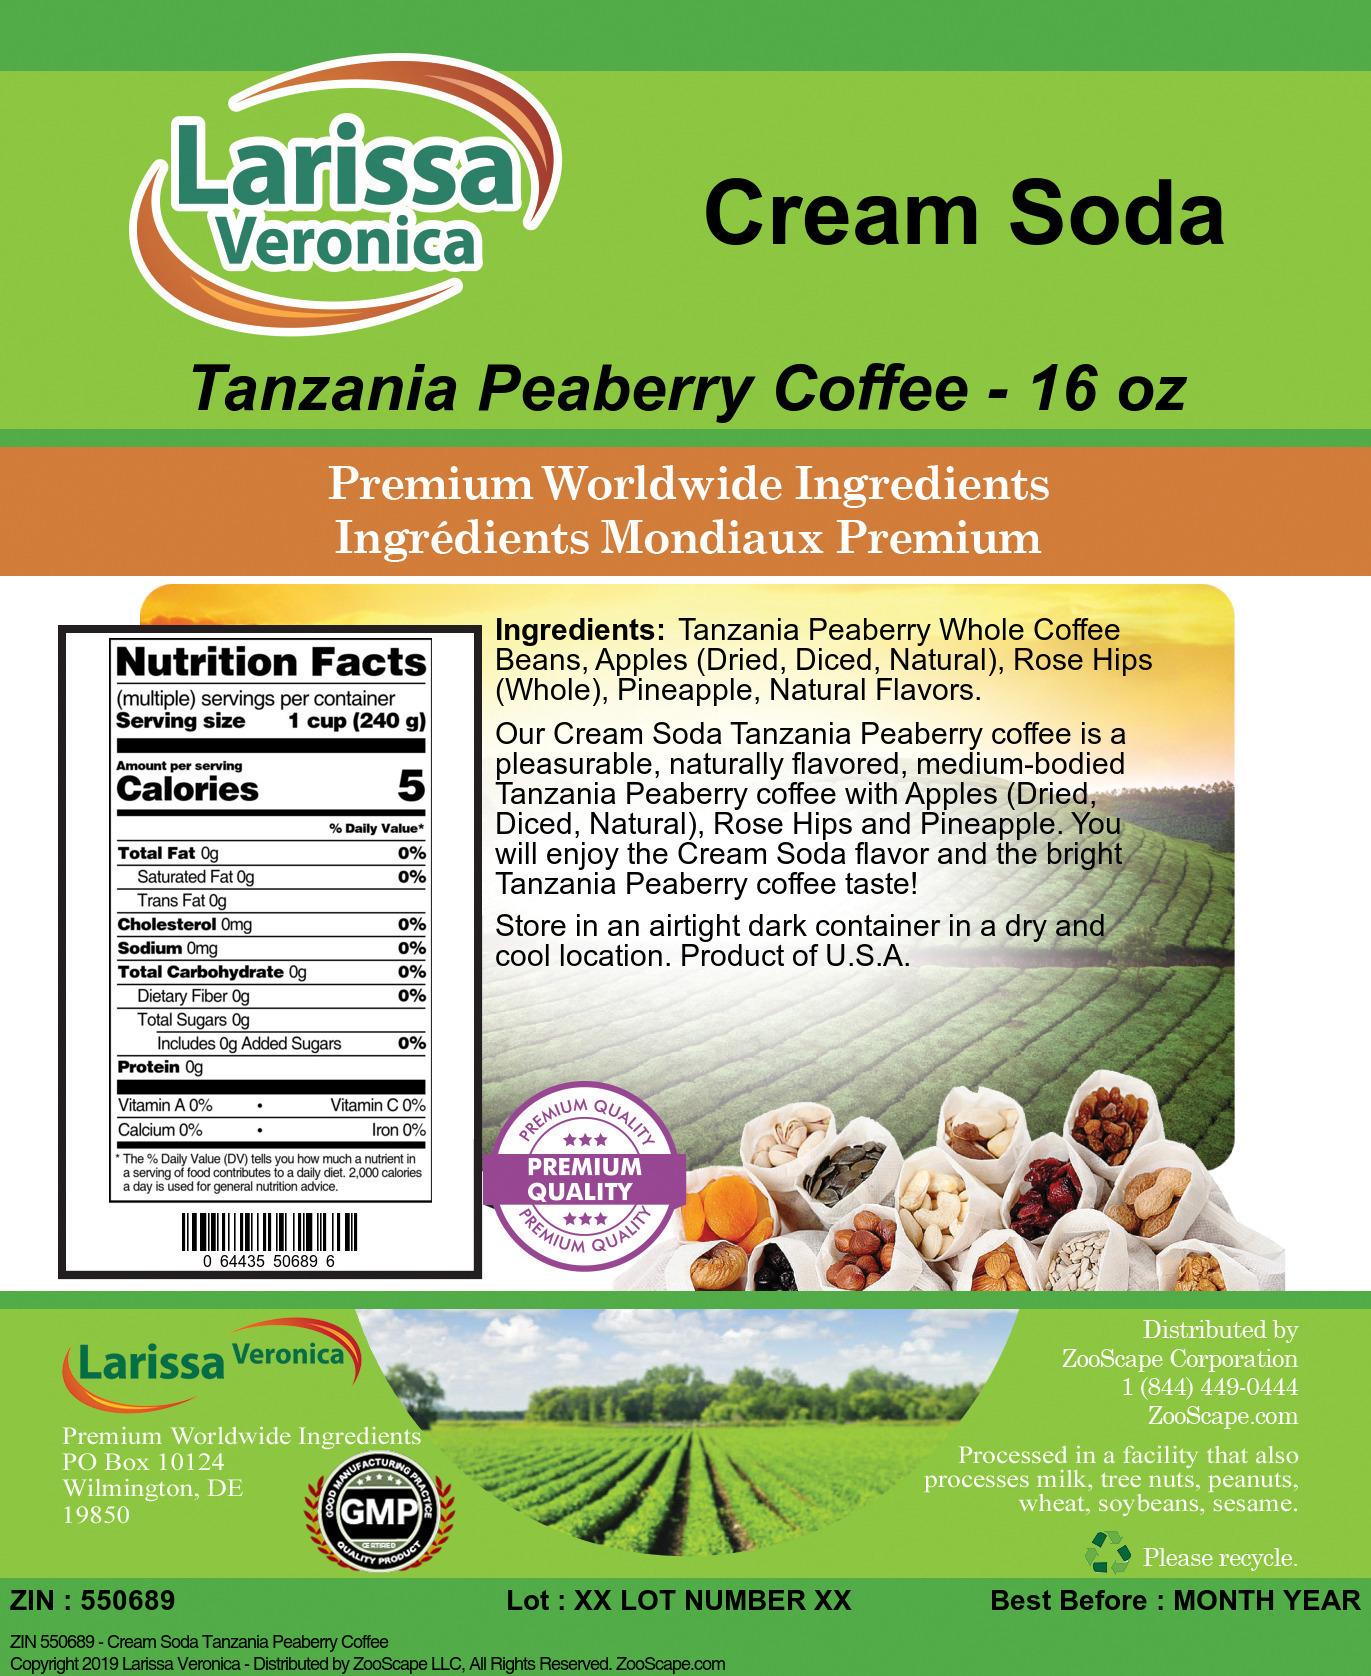 Cream Soda Tanzania Peaberry Coffee - Label